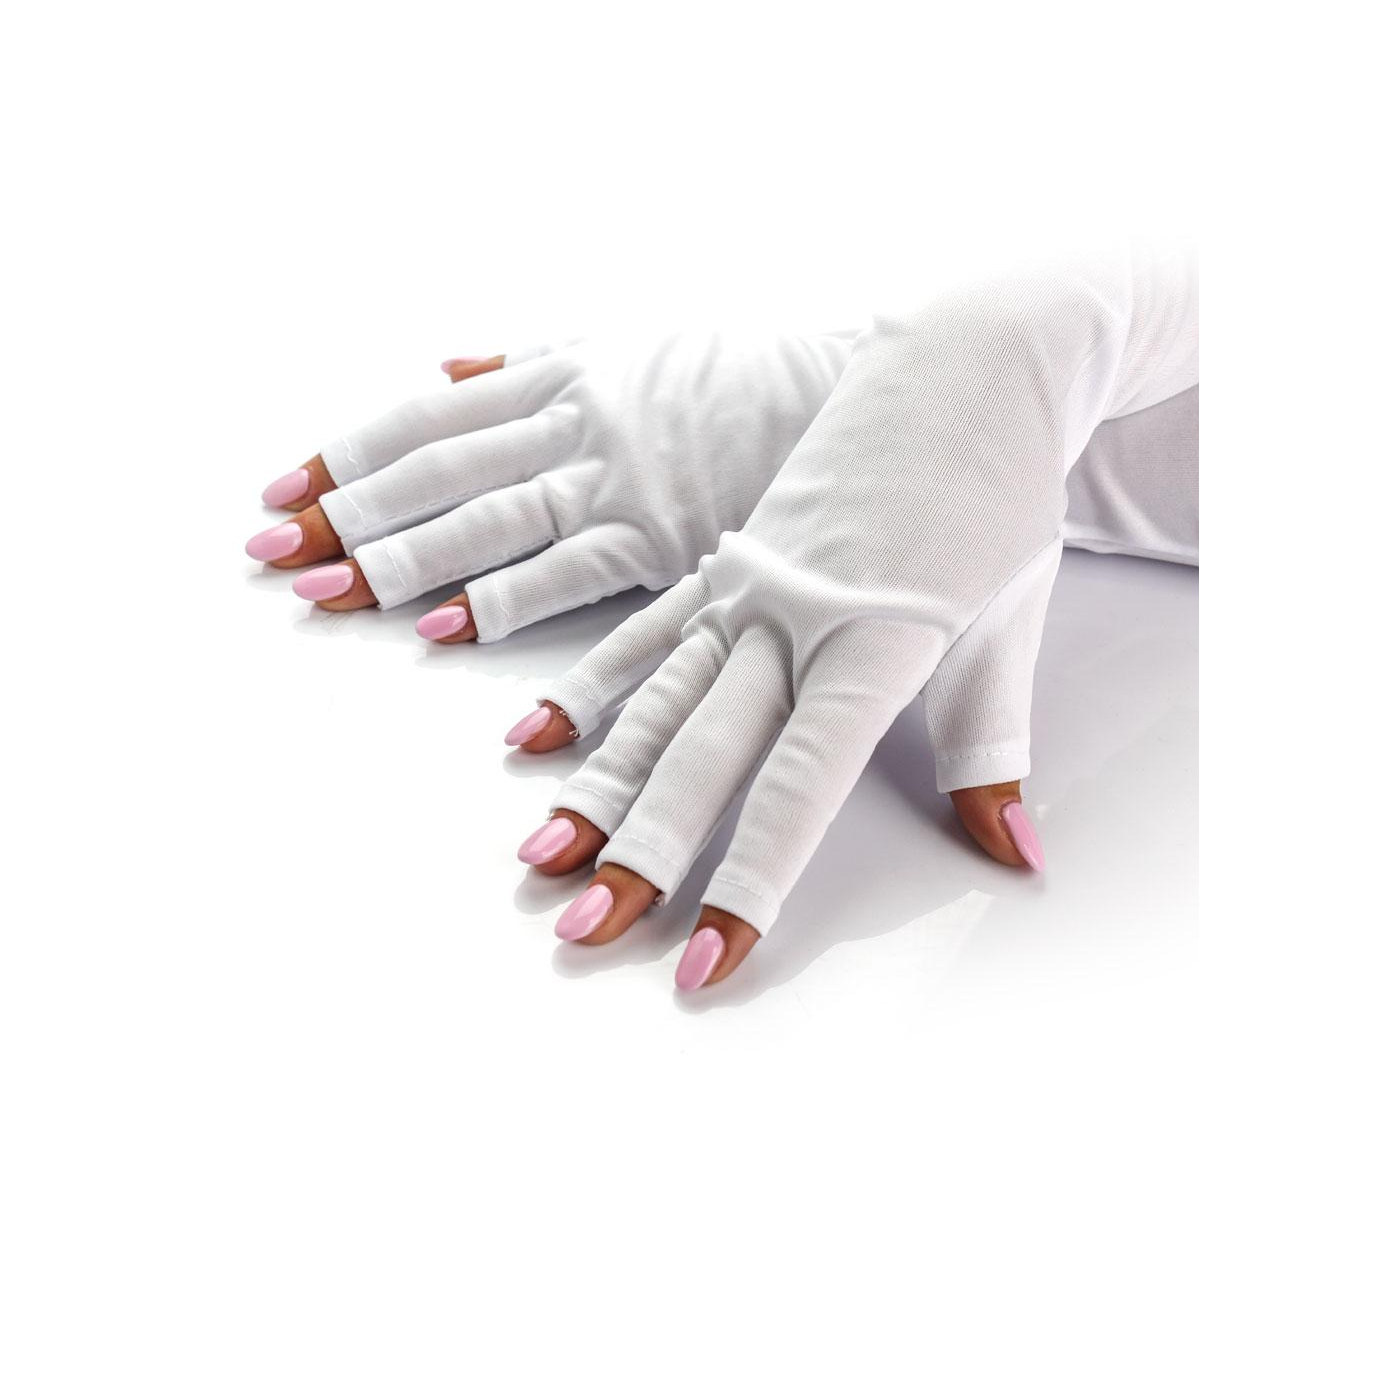 Vente en gros gant de manucure jetable de différentes couleurs et